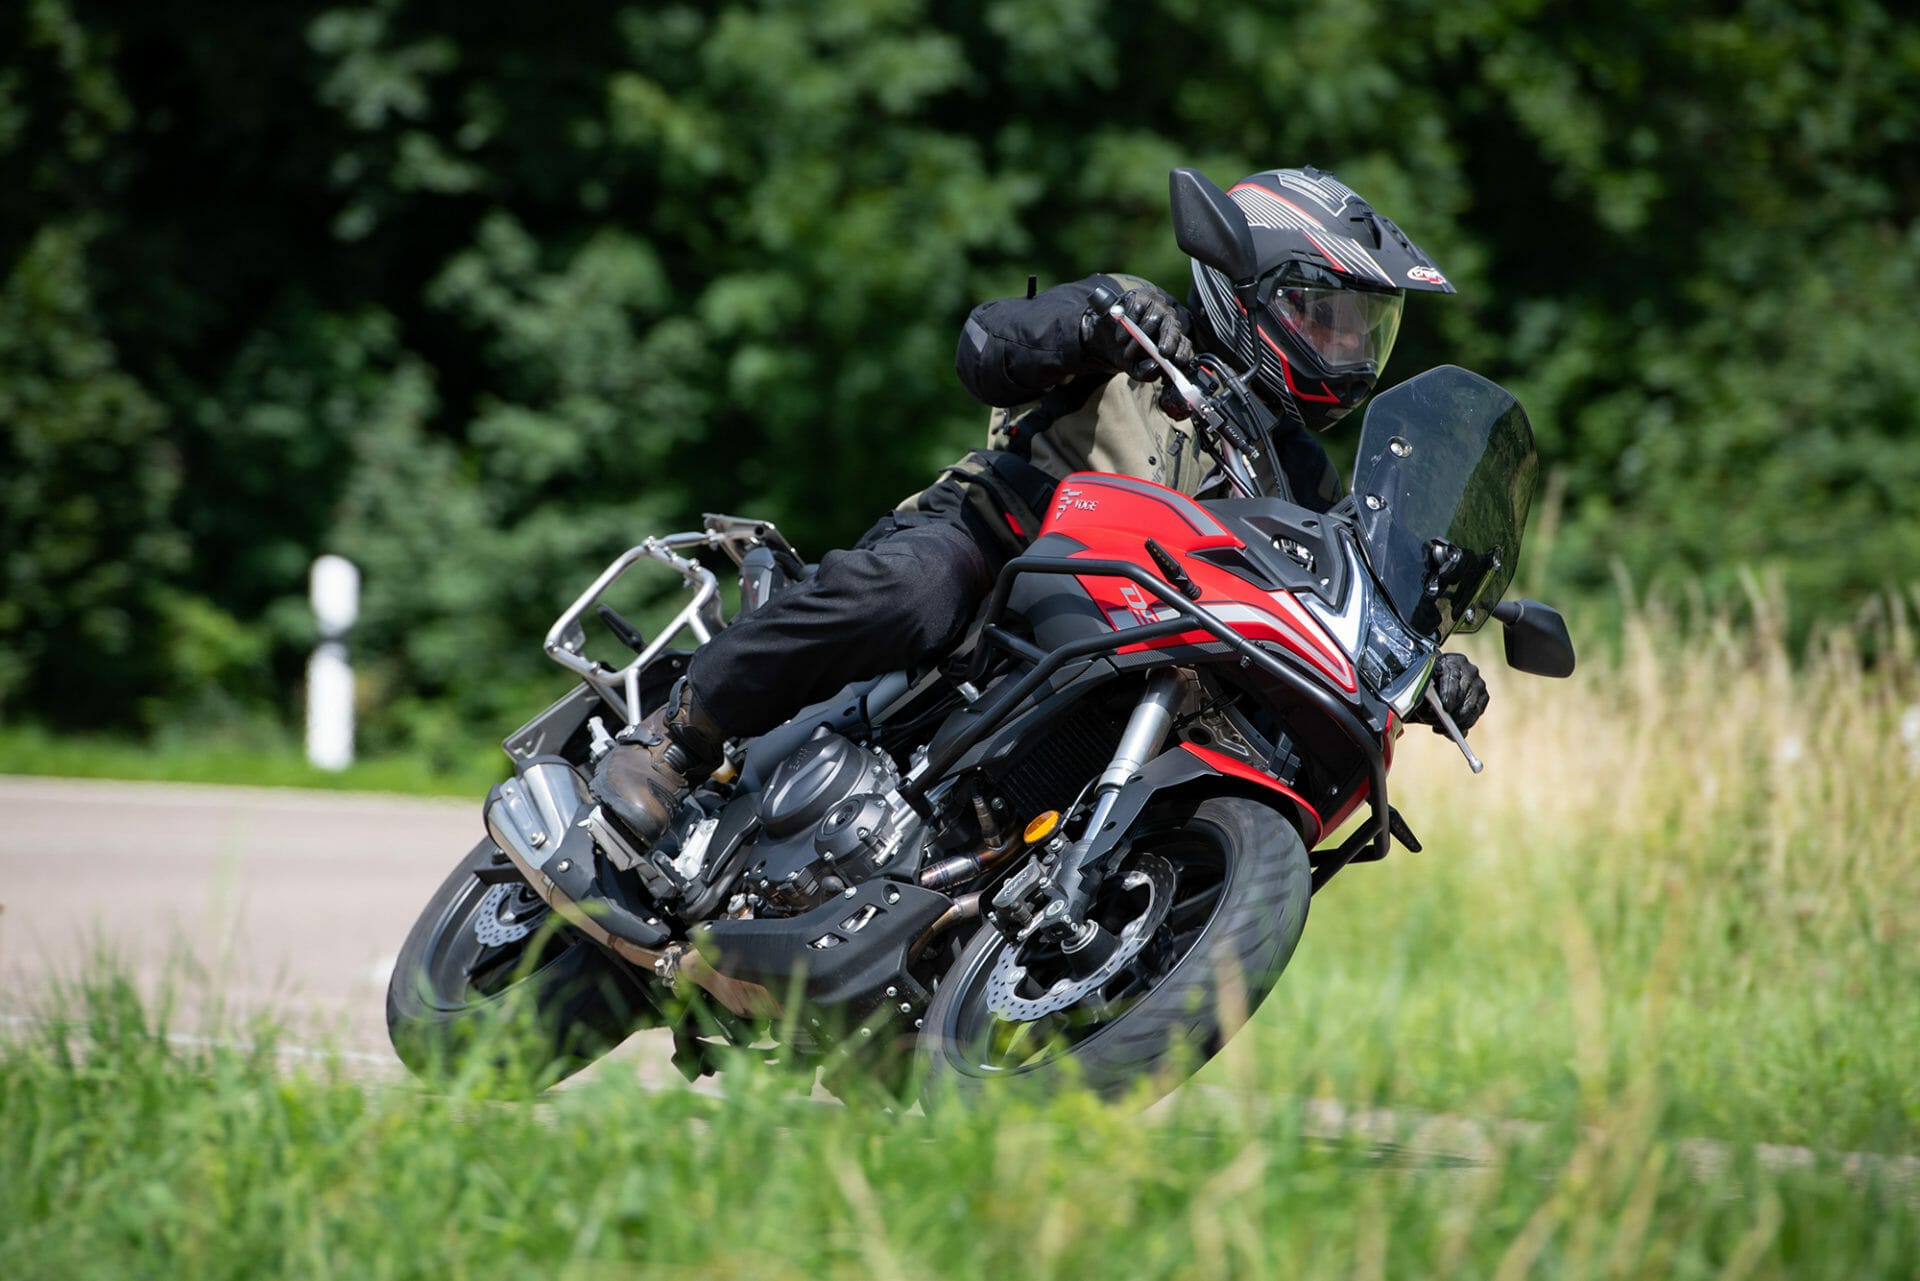 Voge 500 DS Adventure - MOTORCYCLES.NEWS via @motorradnachrichten